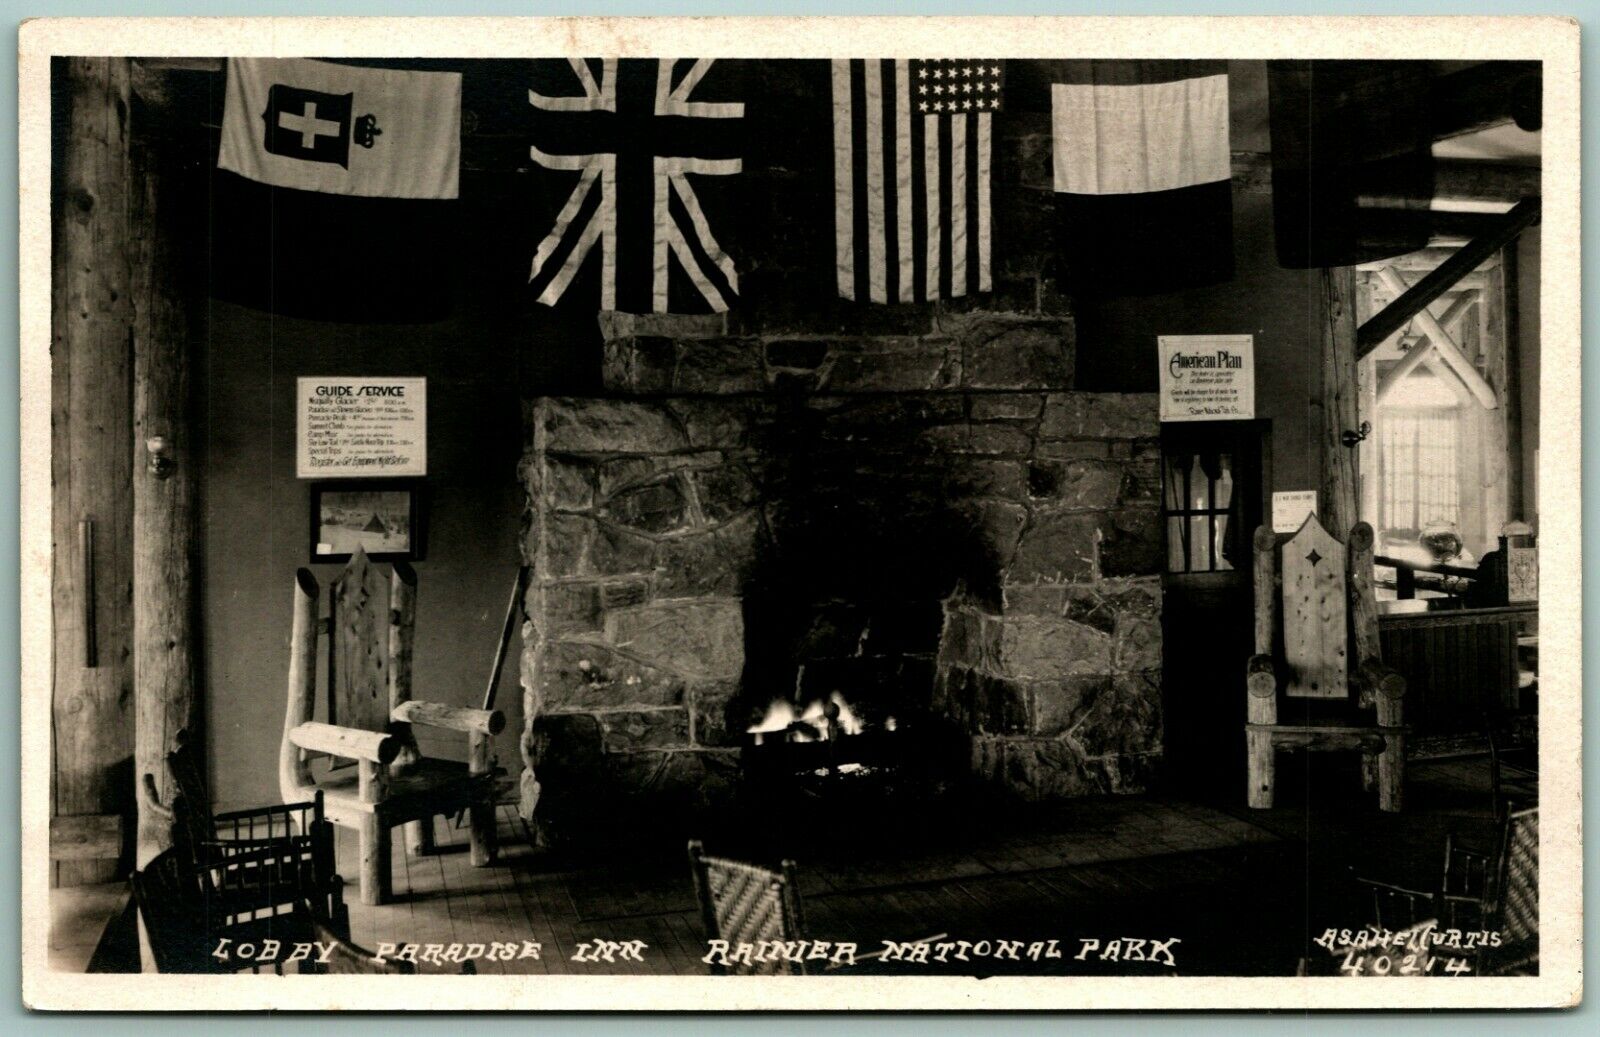 RPPC Lobby Paradise Inn Rainier National Park WA Asahel Curtis 401216 Postcard